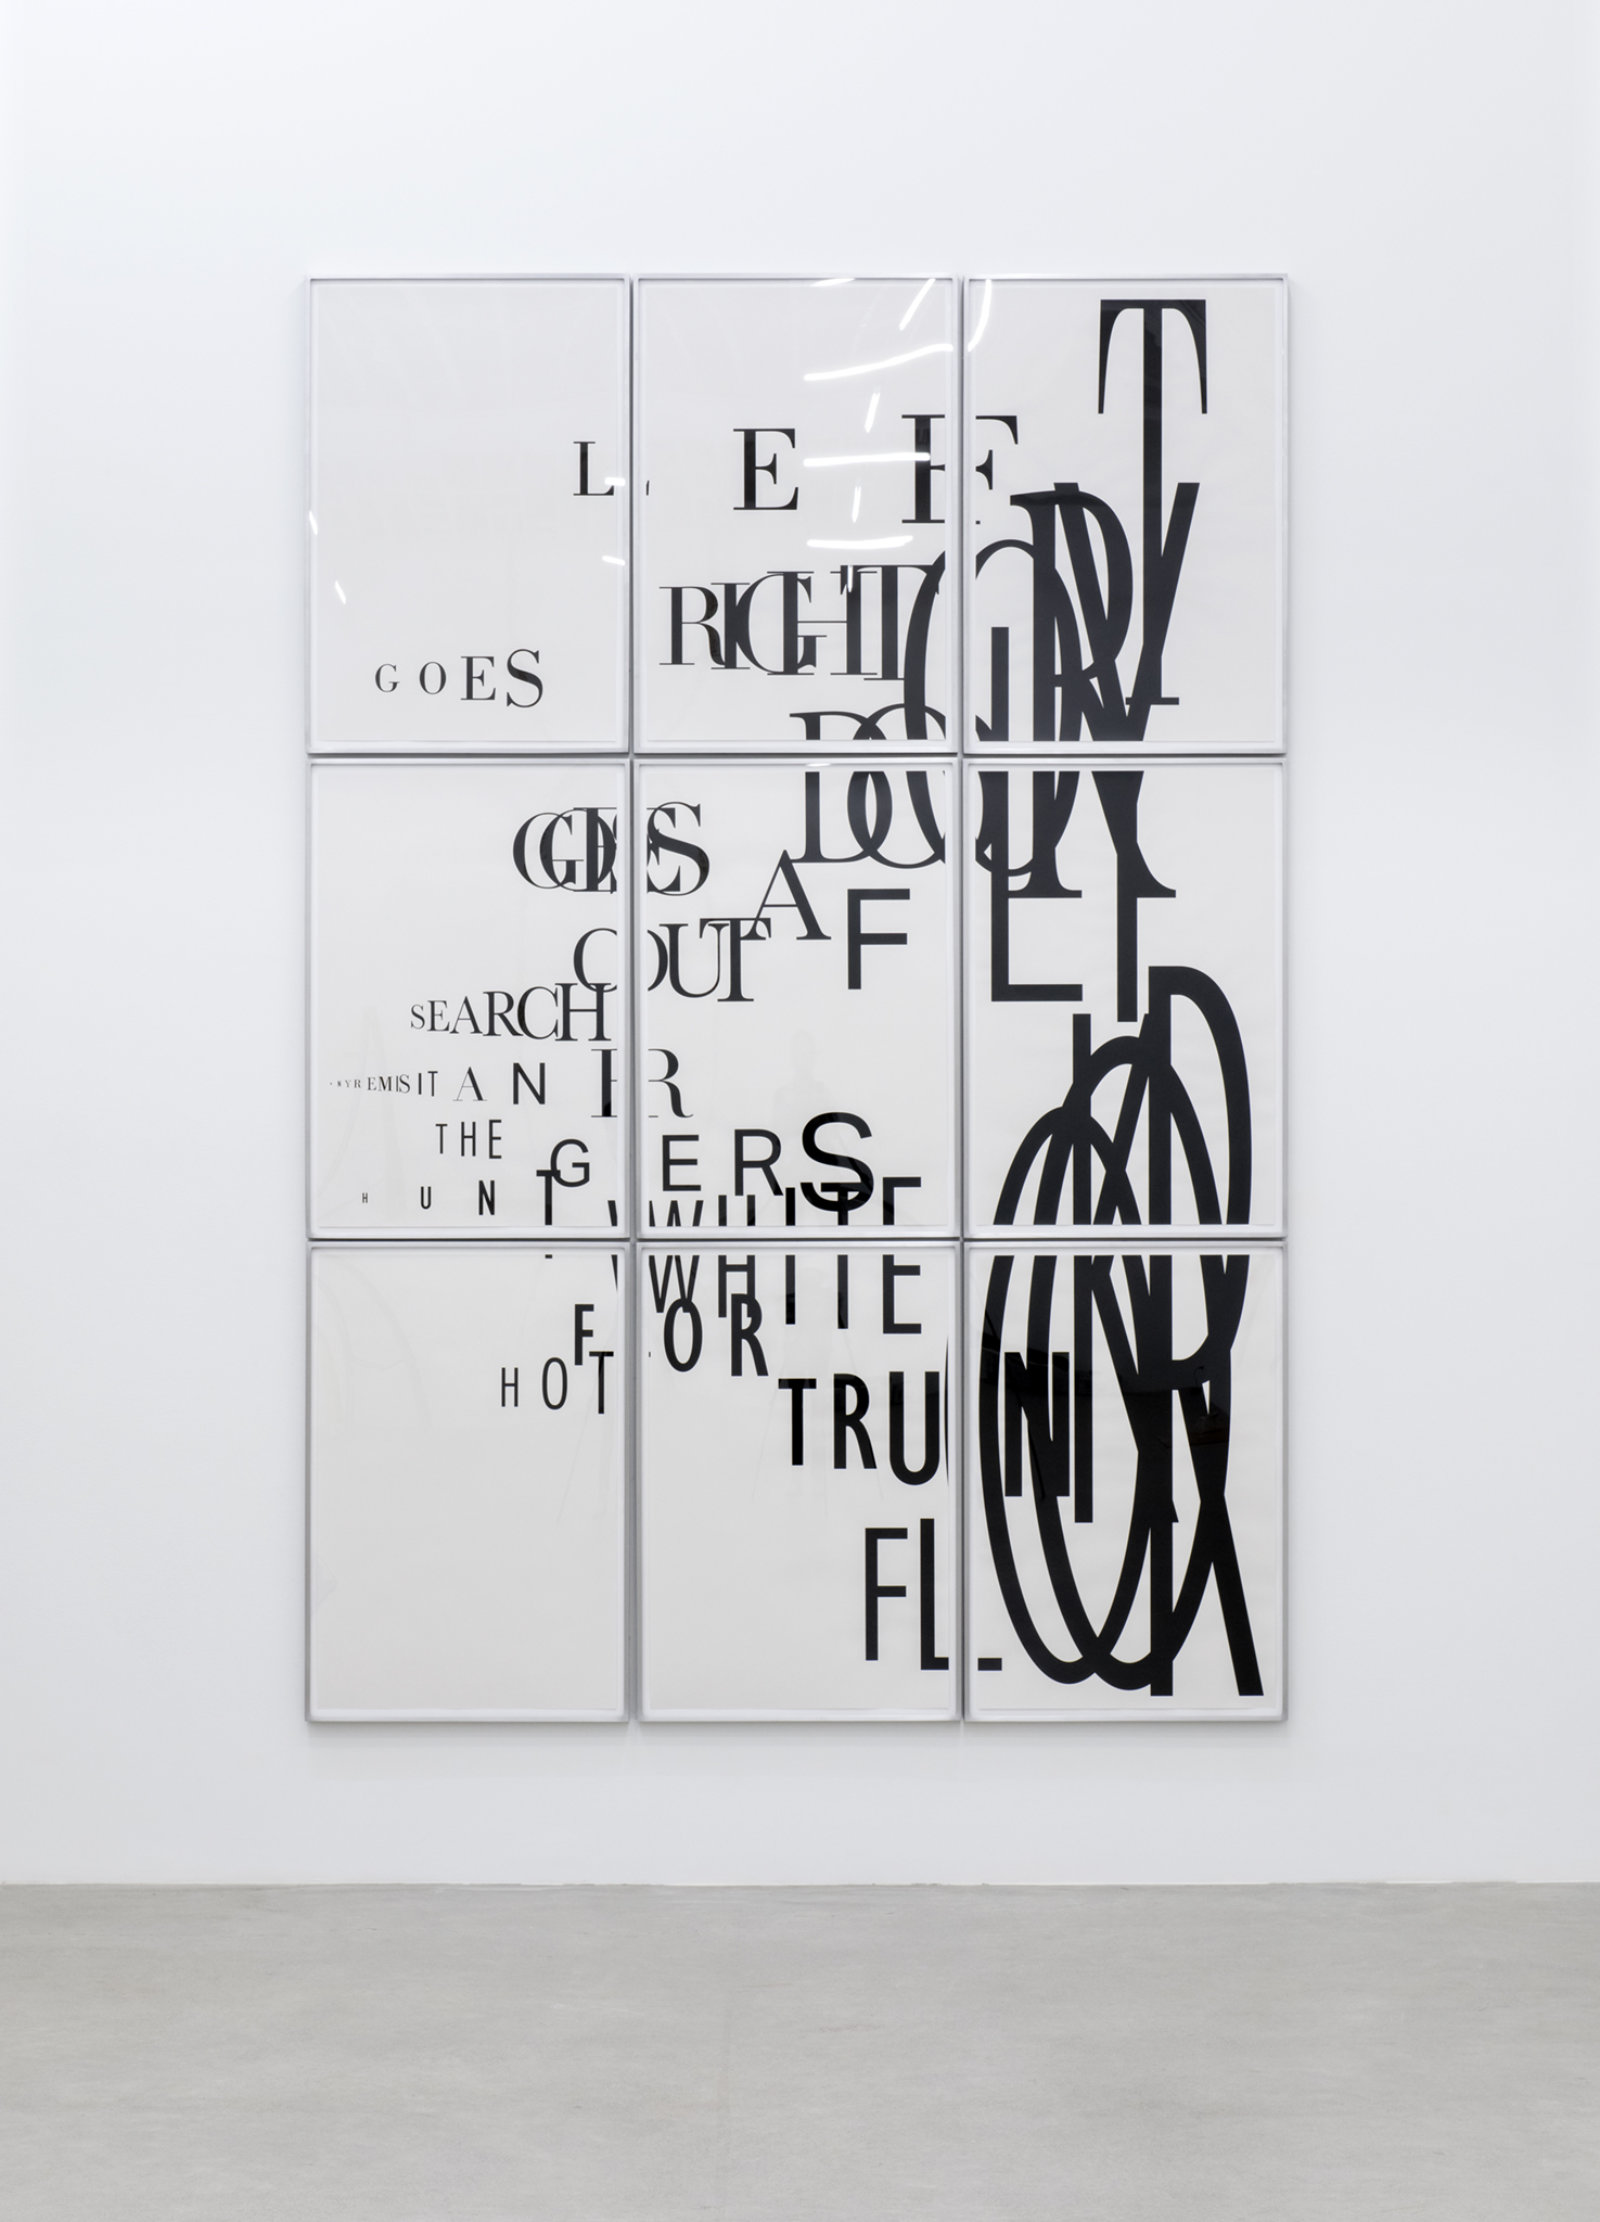 Janice Kerbel, Score, ‘Blast’, 2015, 9 silkscreen prints on paper, composition: 98 x 65 in. (250 x 167 cm), each sheet: 22 x 33 in. (56 x 84 cm)  